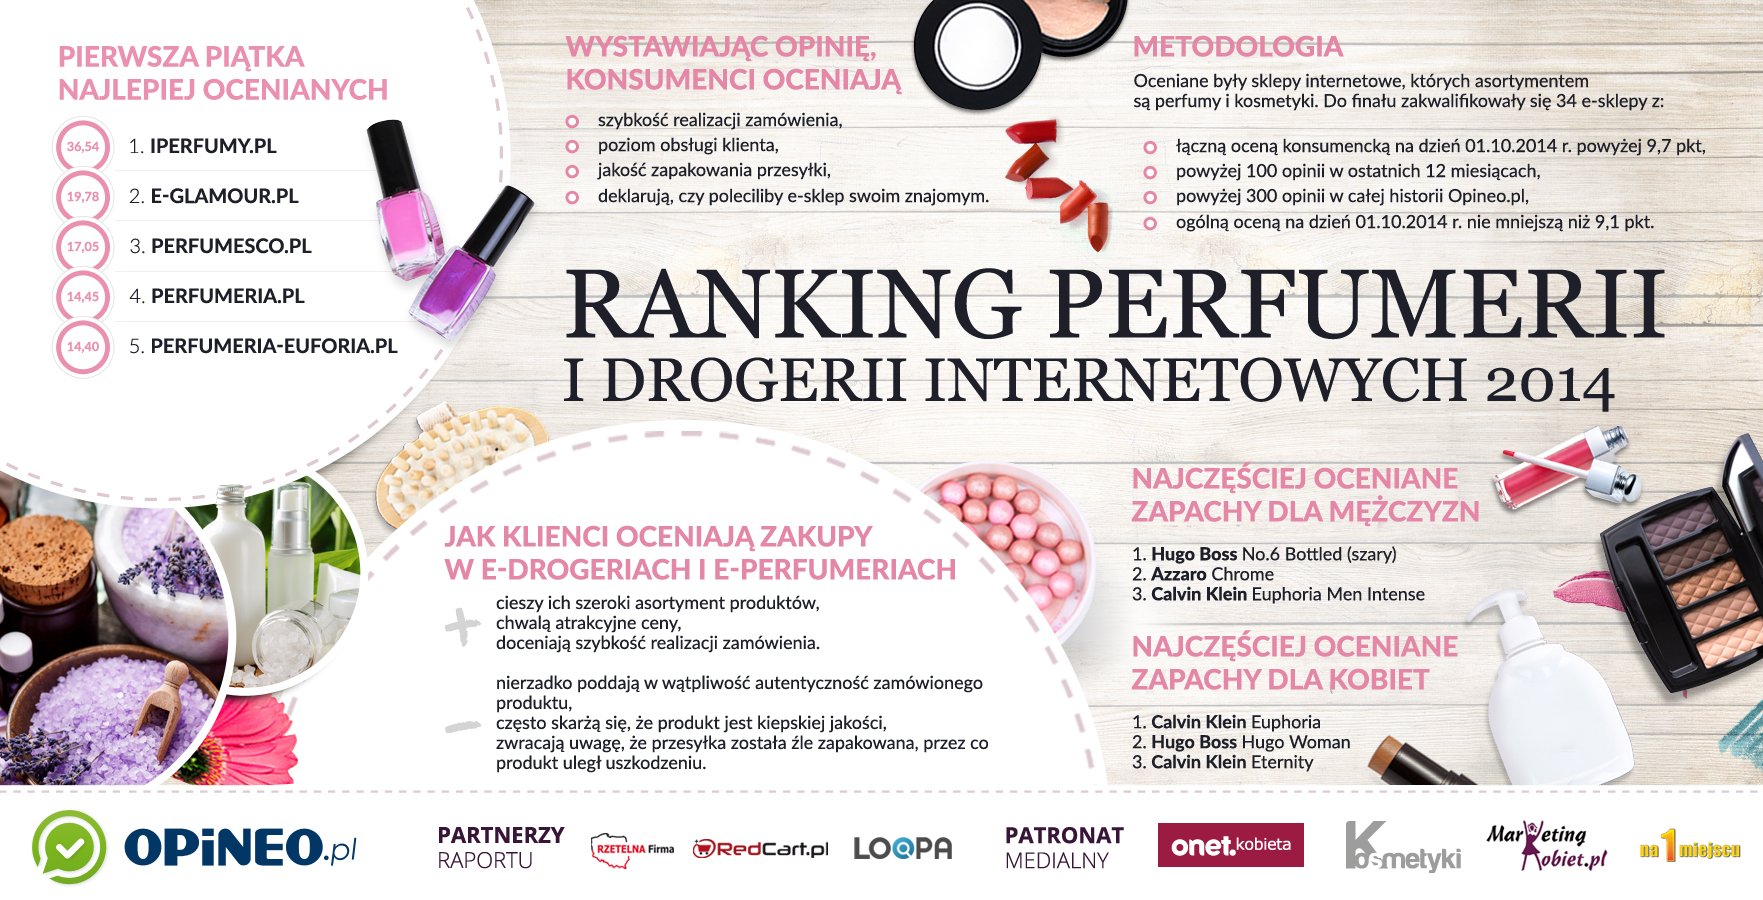 Ranking perfumerii i drogerii internetowych 2014 według Opineo